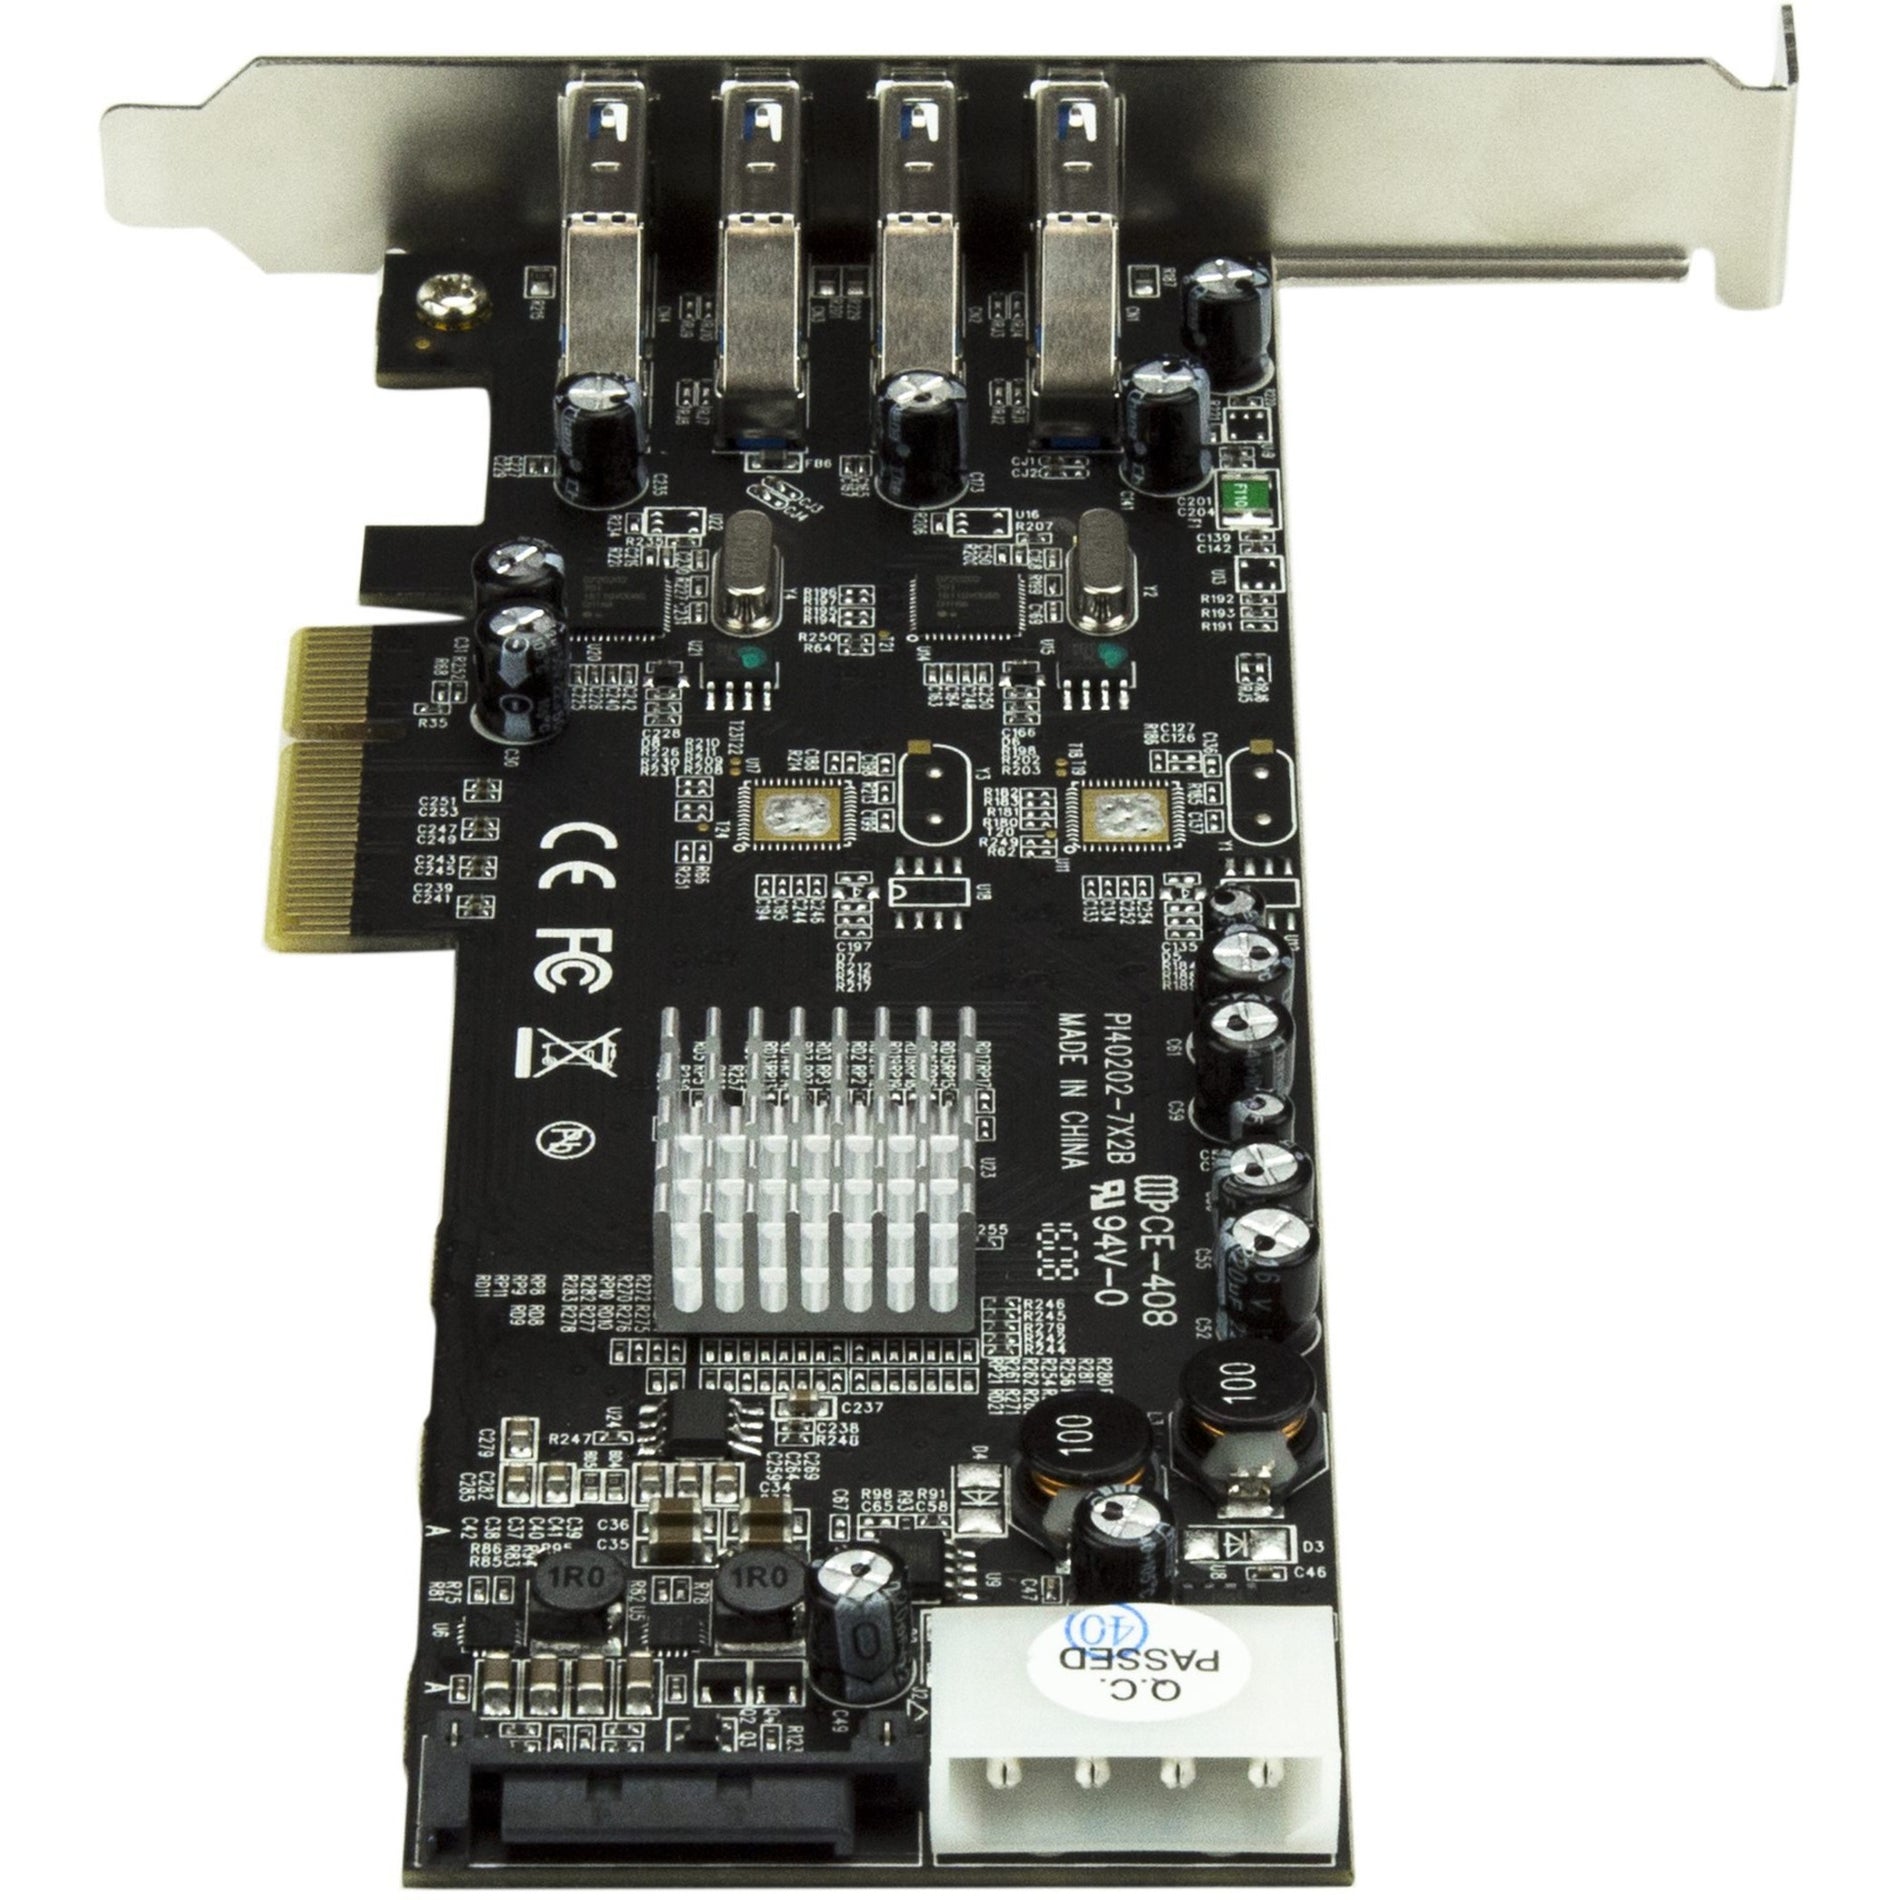 星际科技 PEXUSB3S42V 4 通道 PCIe USB 卡适配器与 UASP - 超速 USB 3.0，SATA/LP4 电源 星际科技